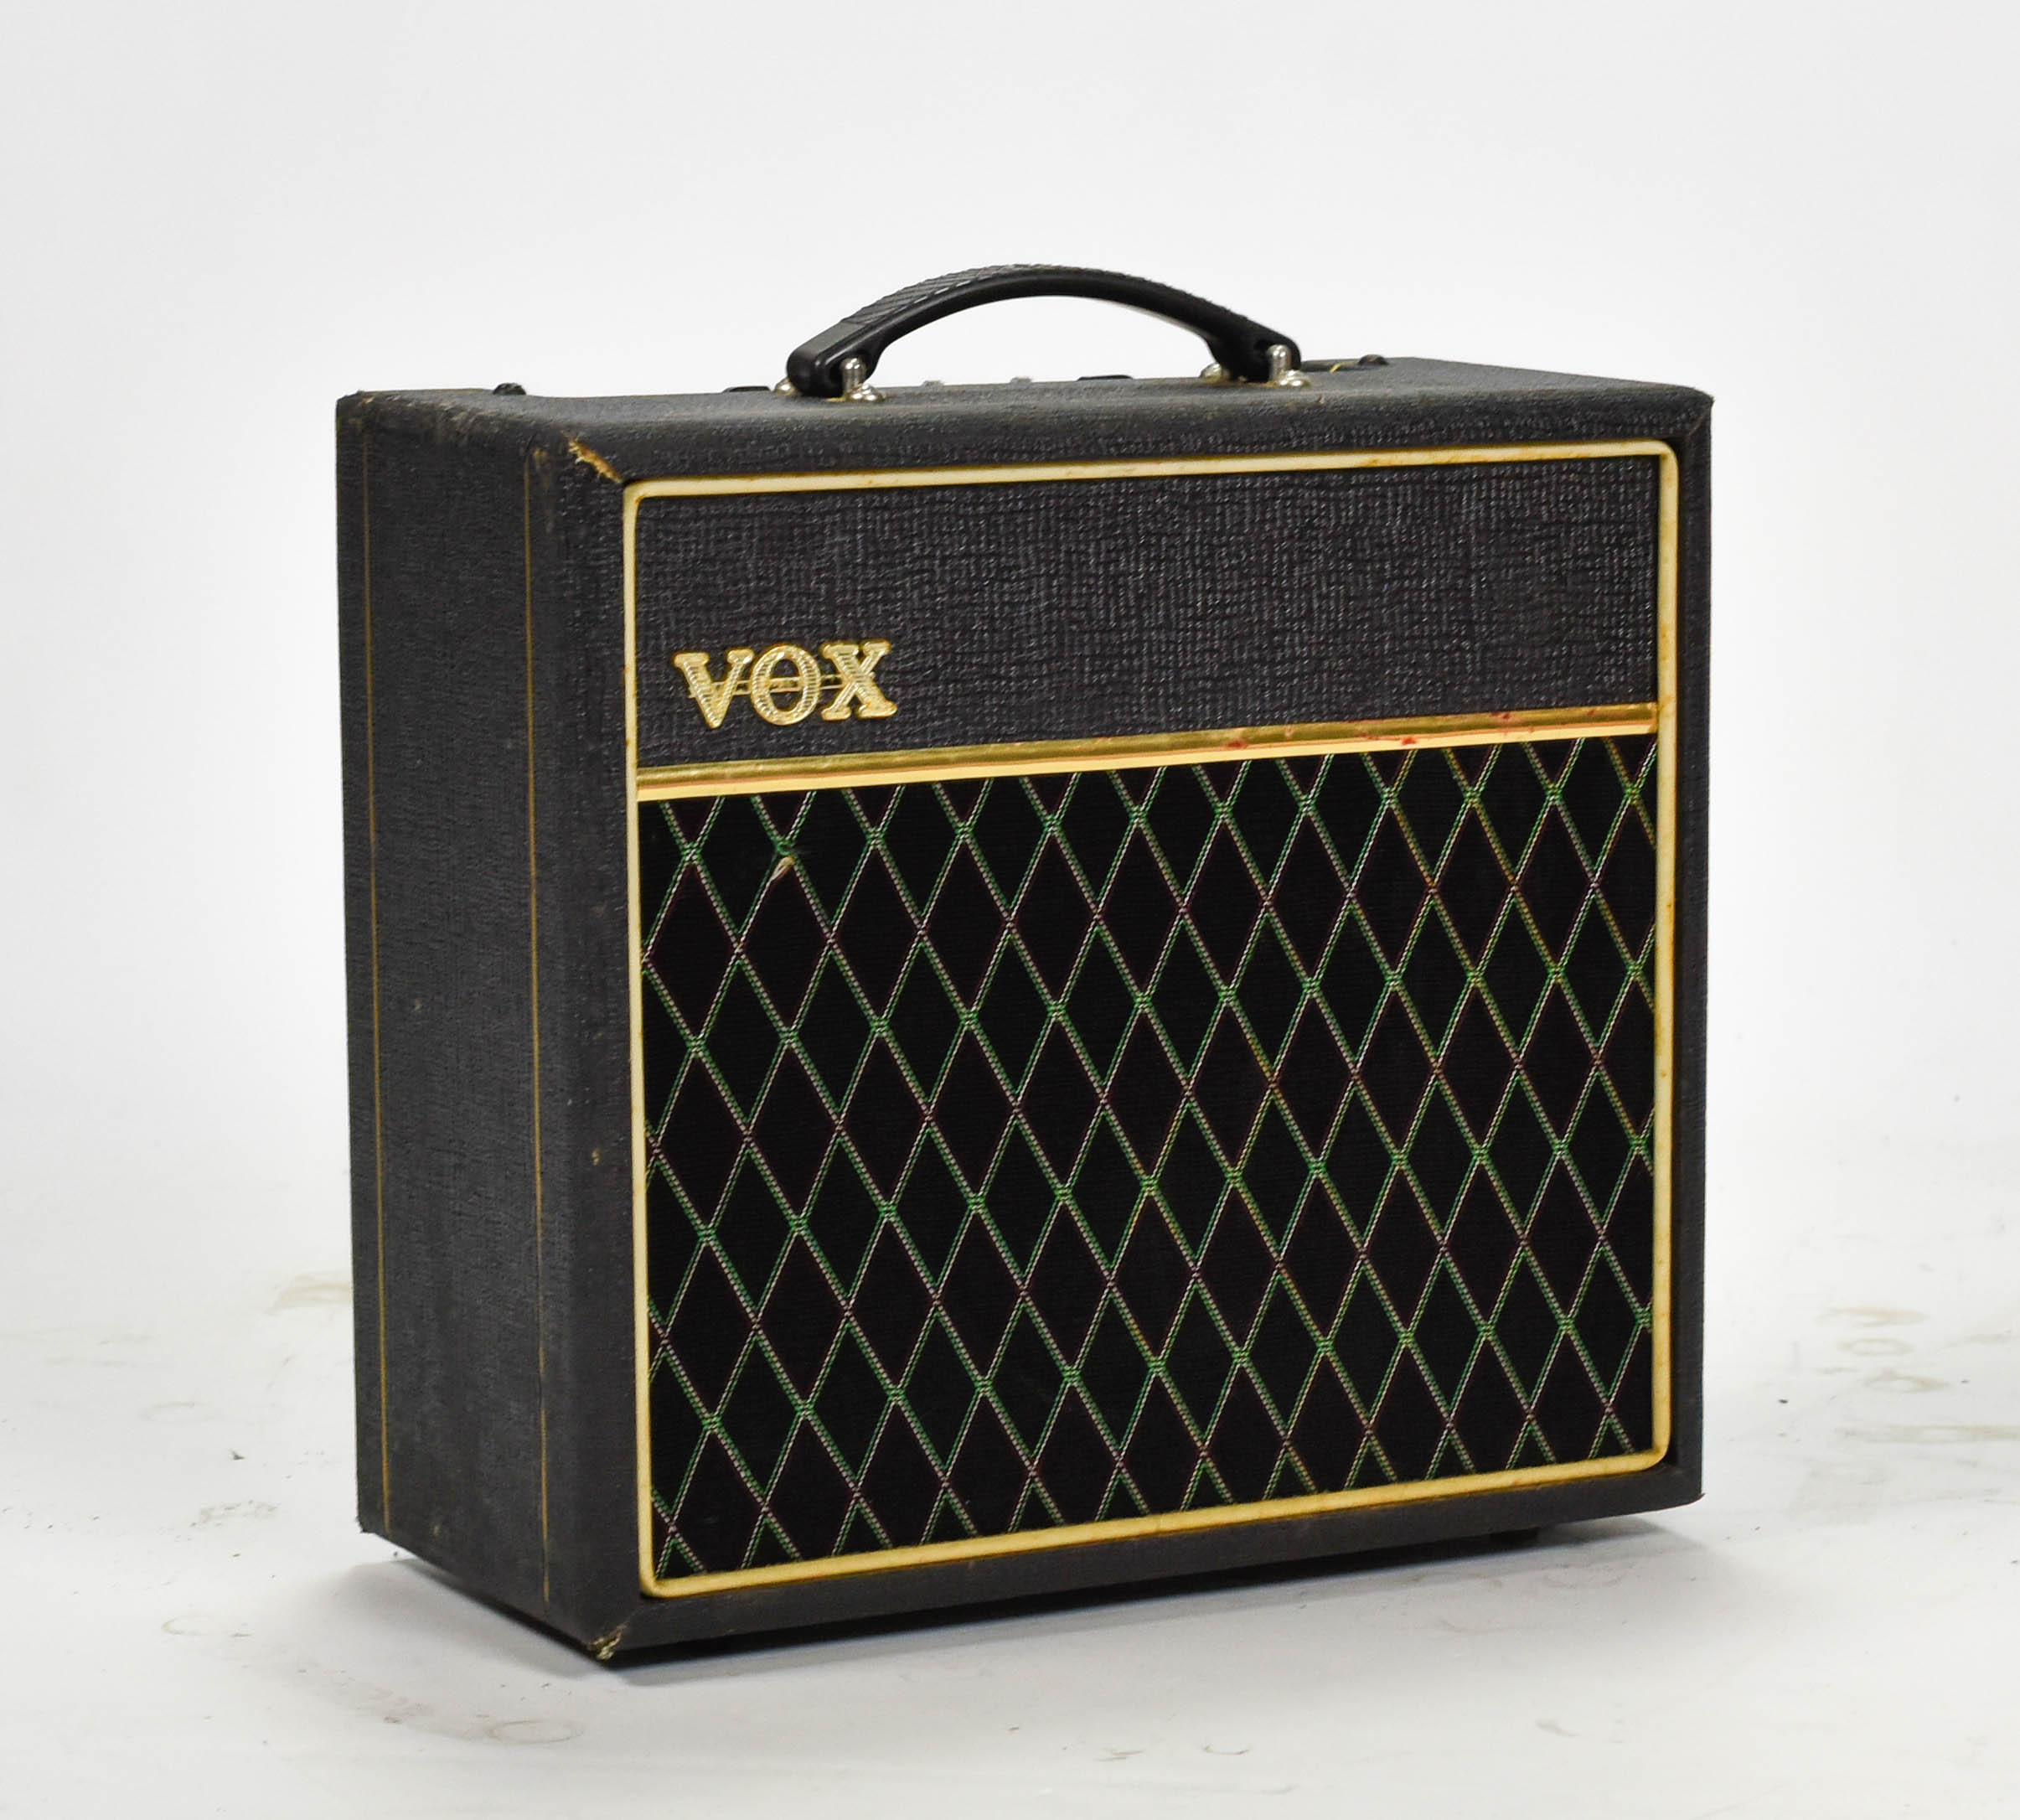 Vox Pathfinder 15 v9158 1x8 Guitar Amplifier